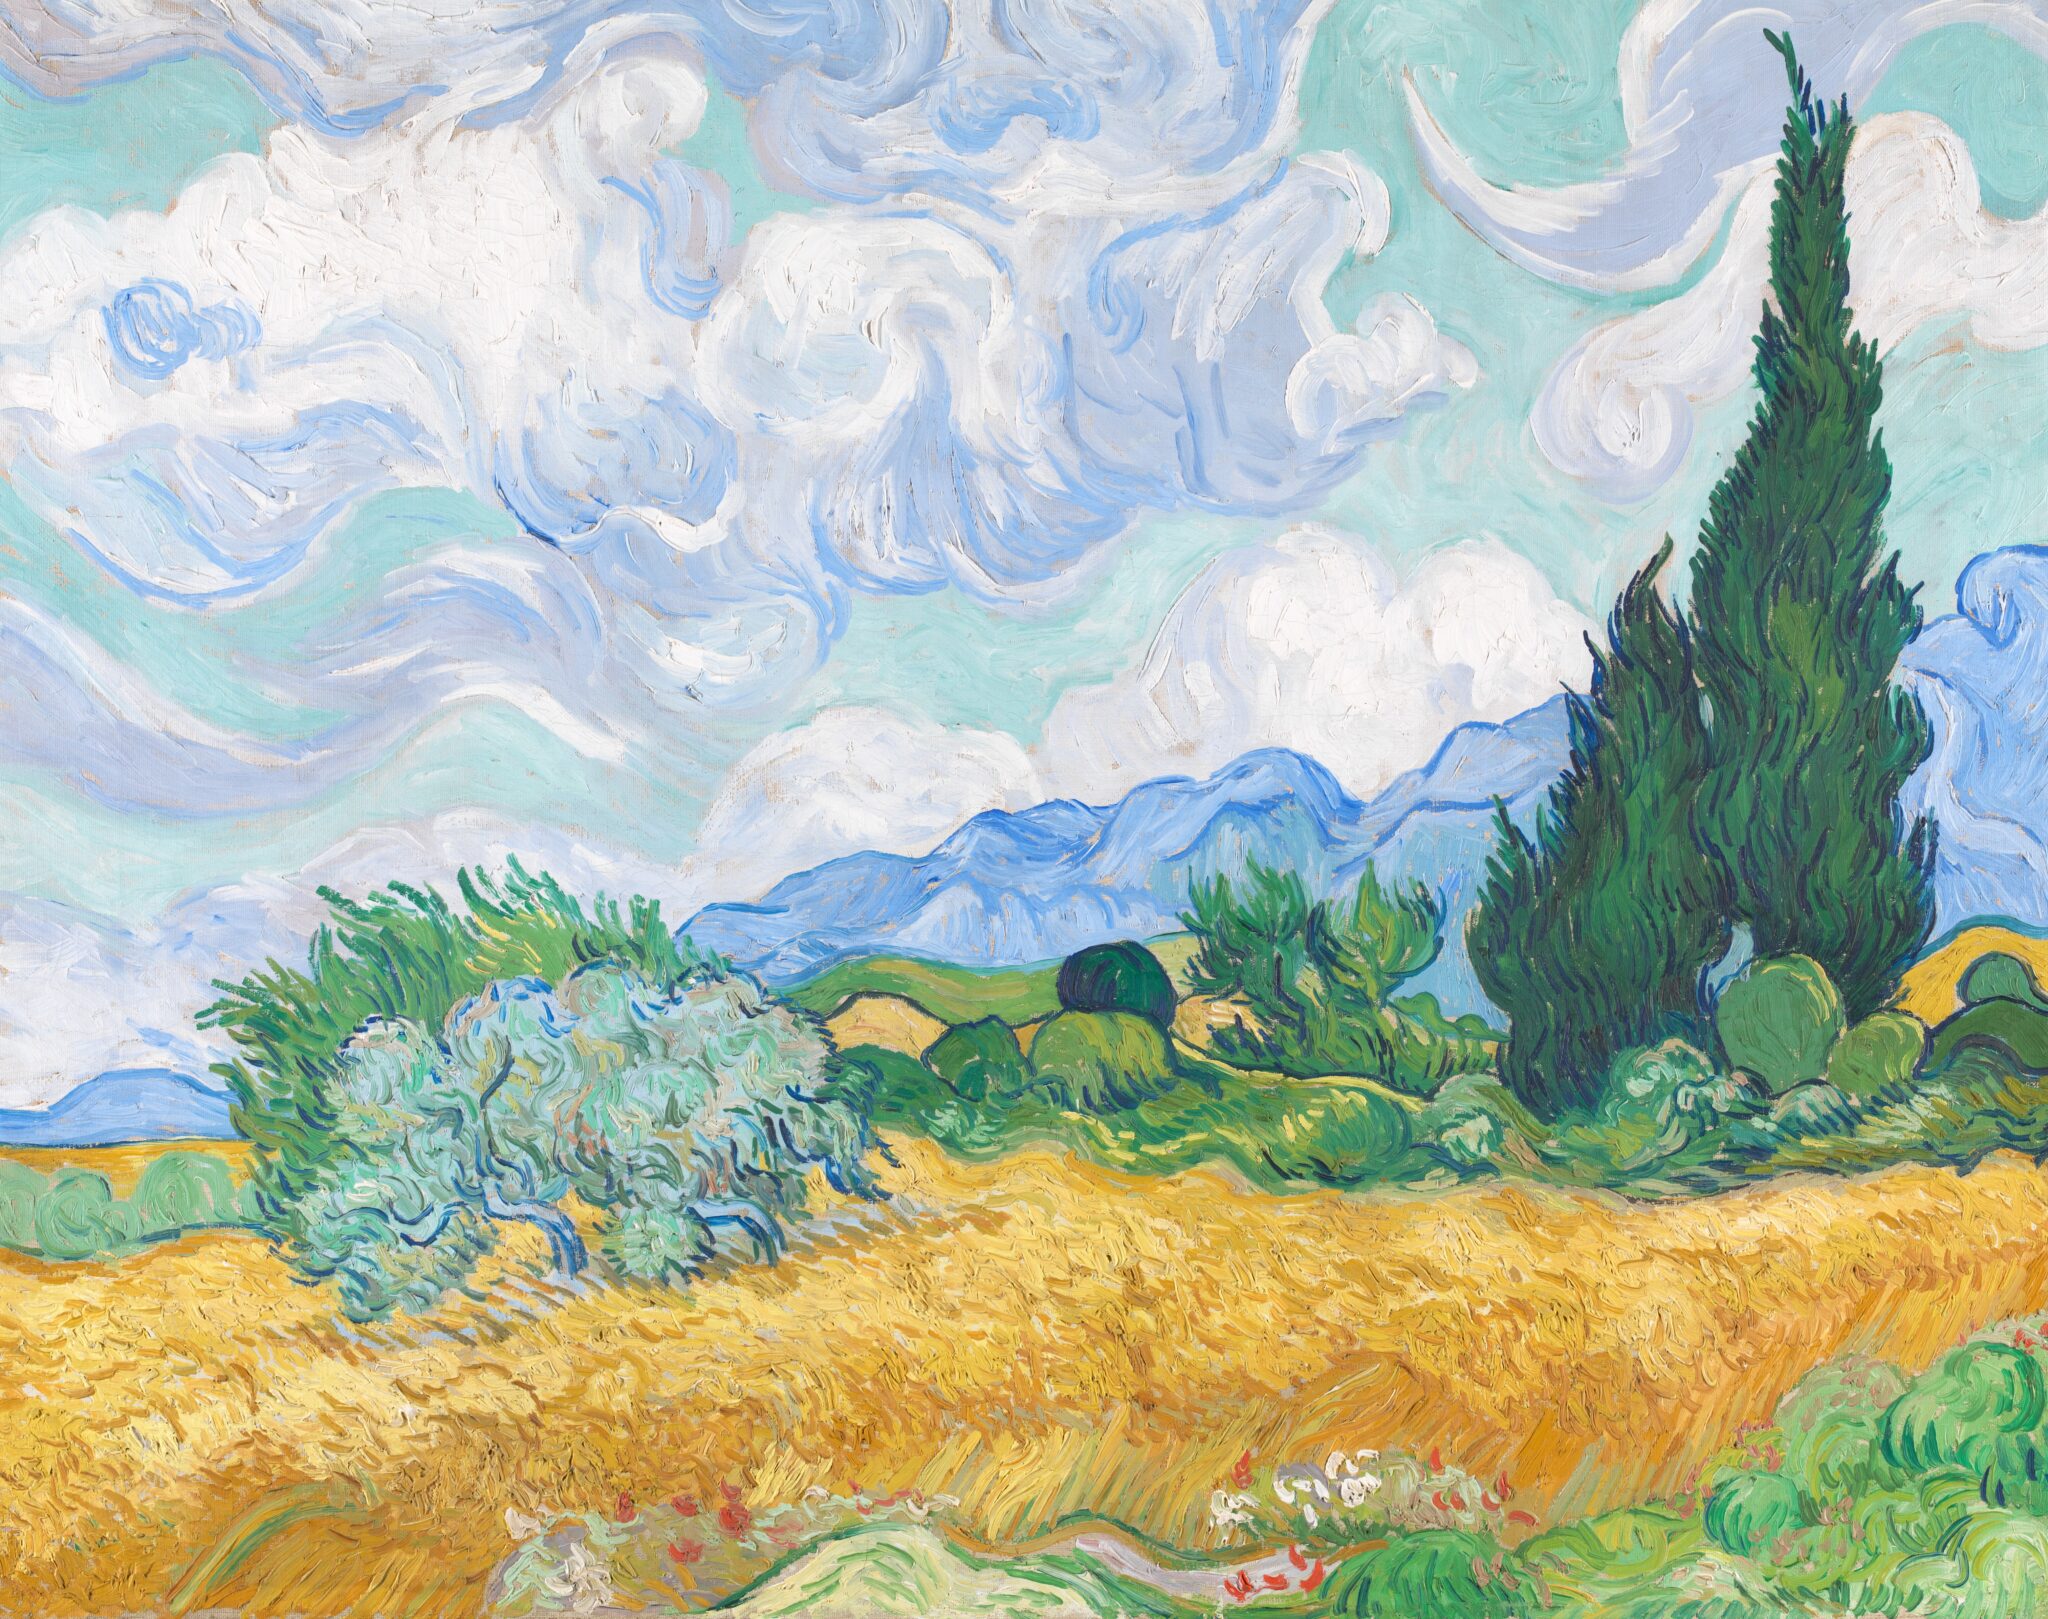 Van Goghâs Cypresses Take Root at Manhattan | The New York Sun